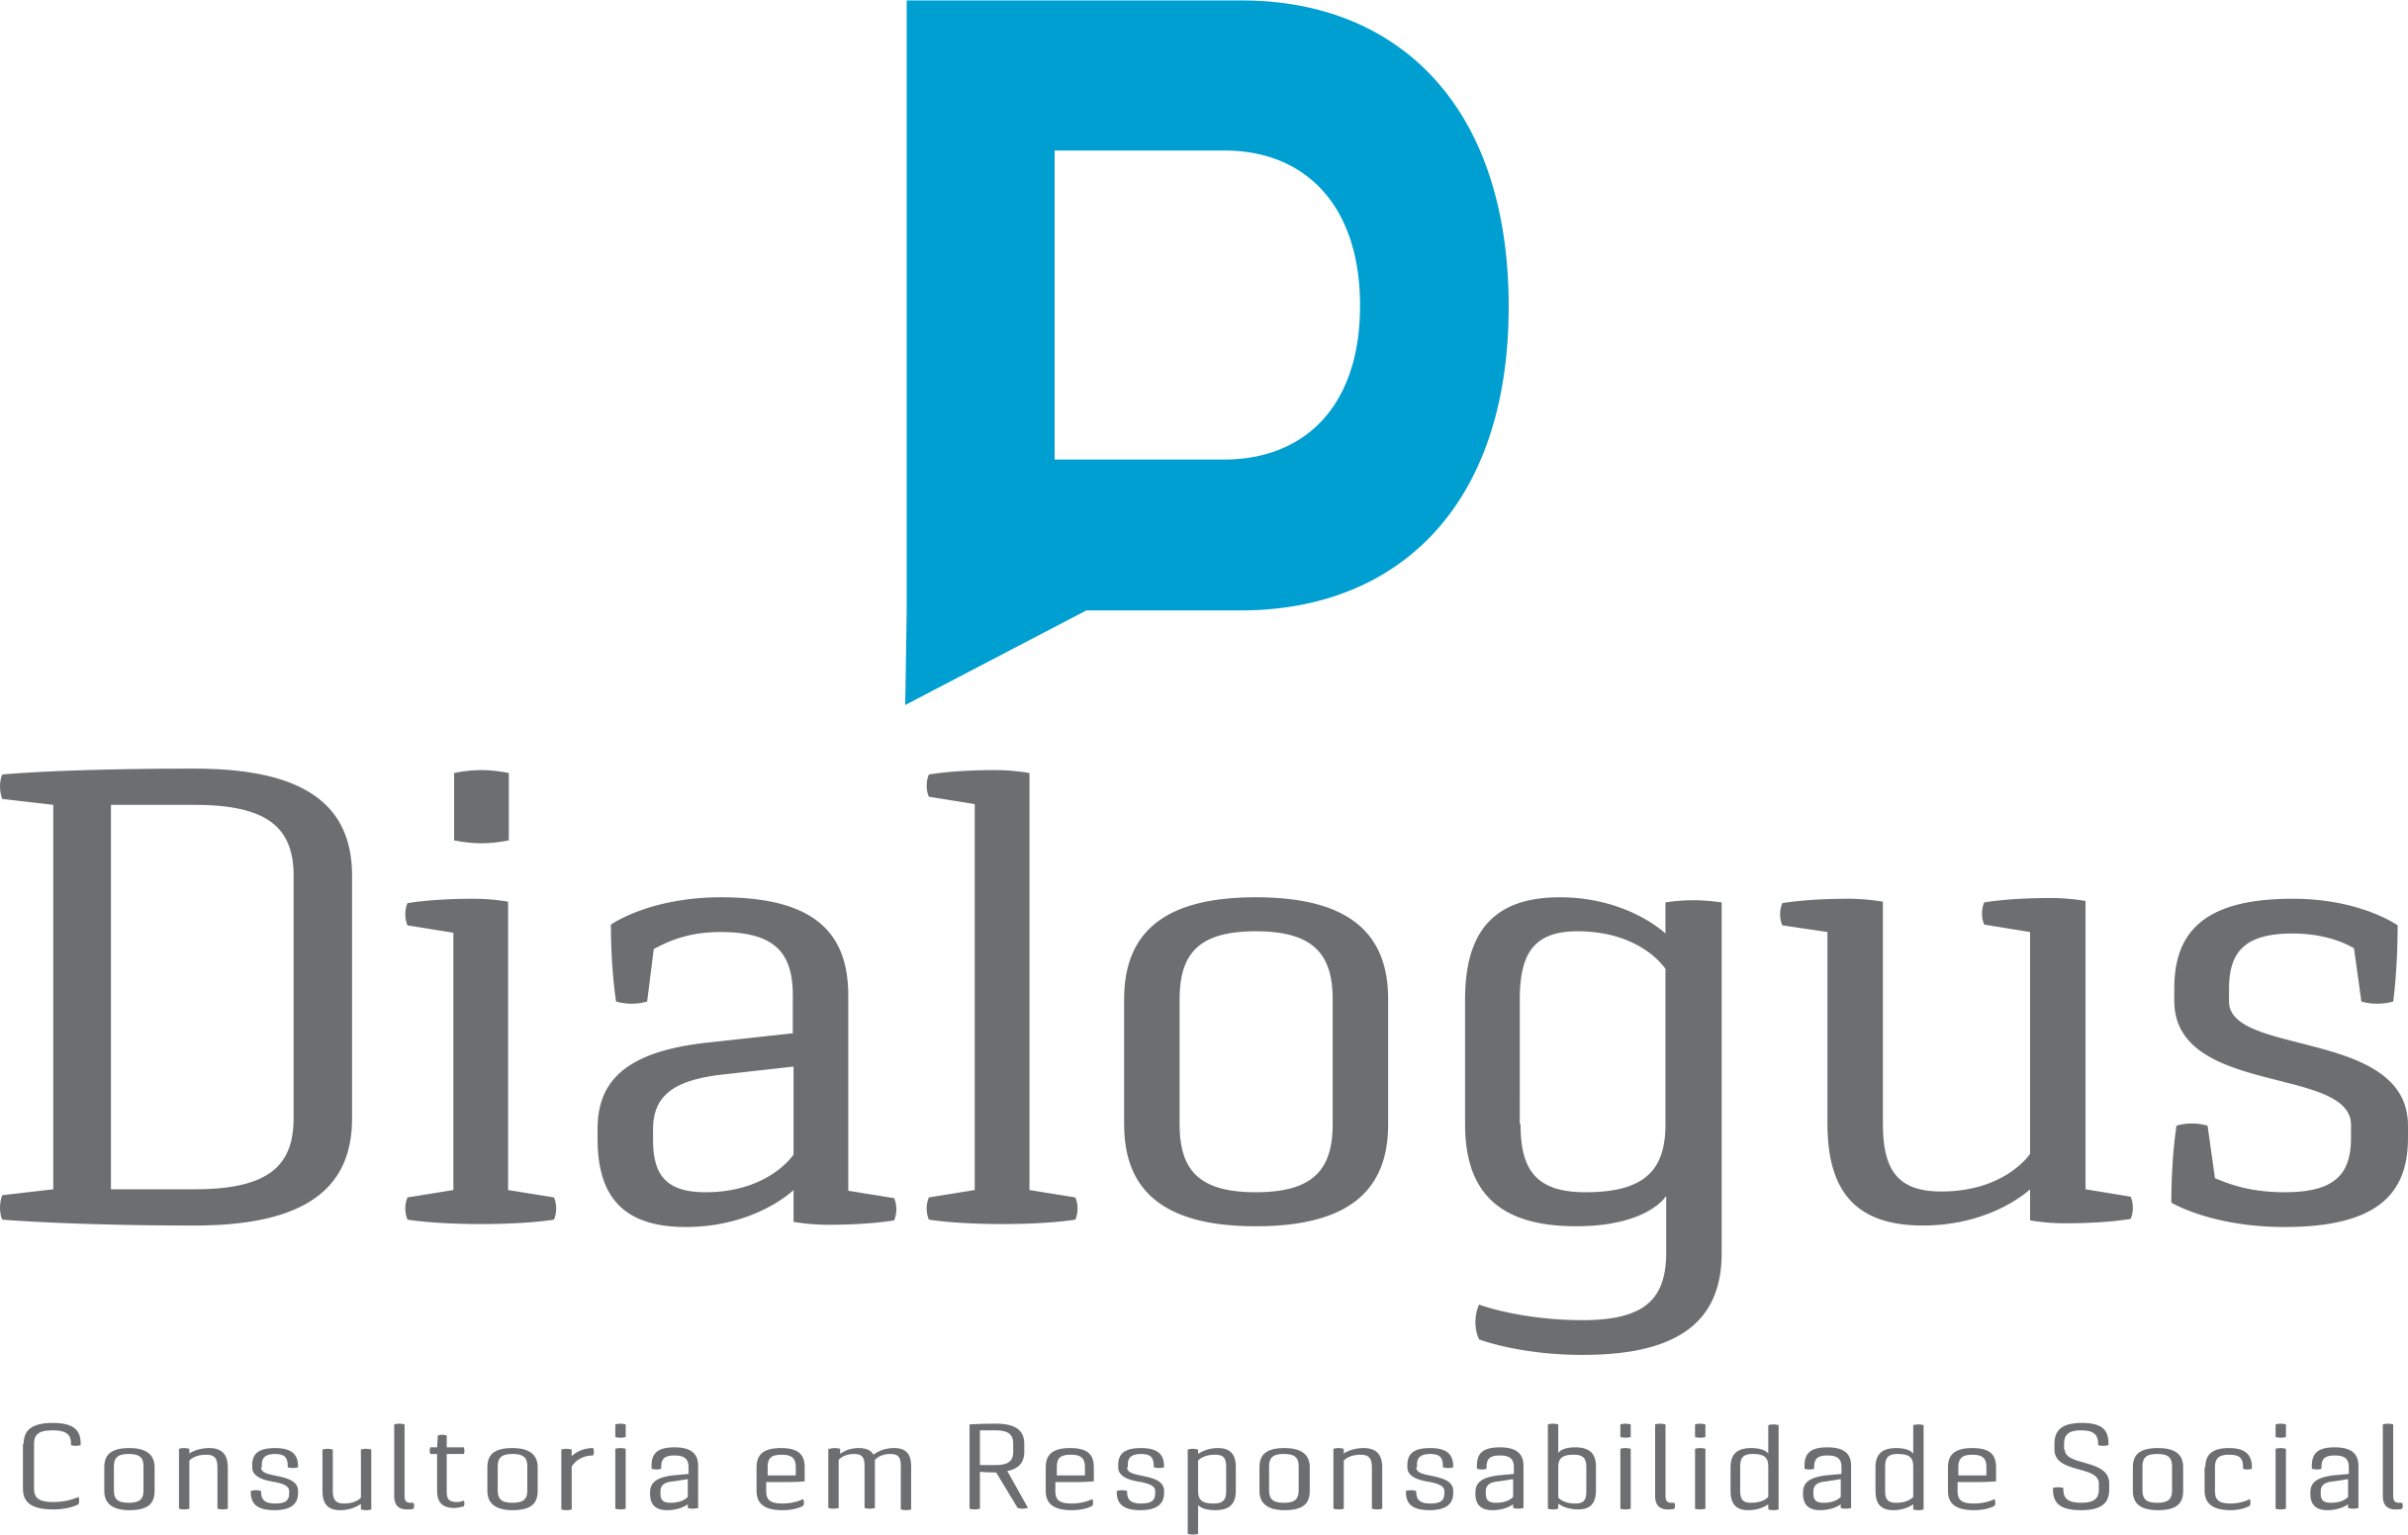 Dialogus Responsabilidade Social - Consultoria - Planejamento Estratégico com foco no Terceiro Setor - Fortaleza/CE